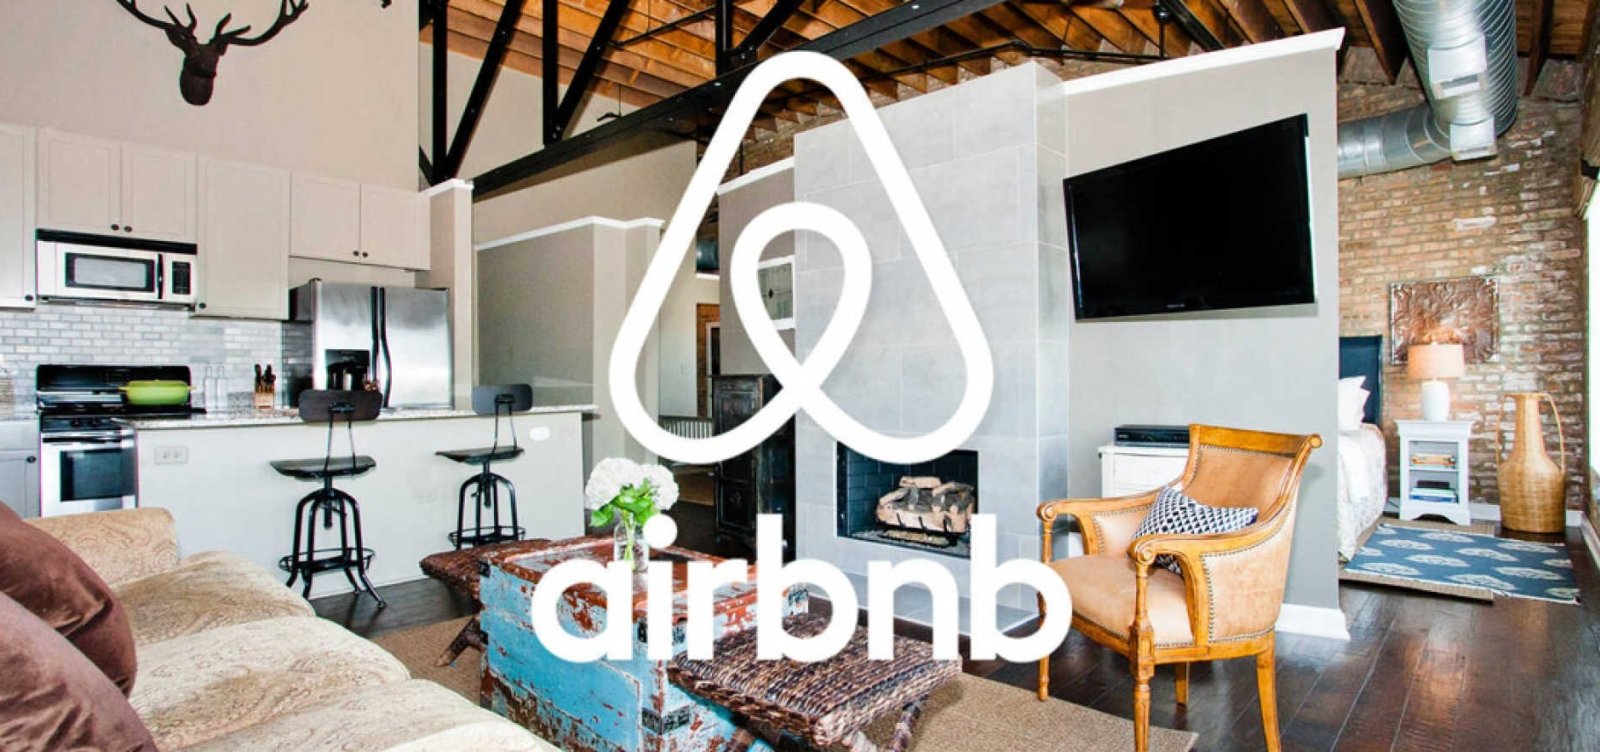 Taxação do Airbnb em Salvador é inconstitucional, decide relator na CMS